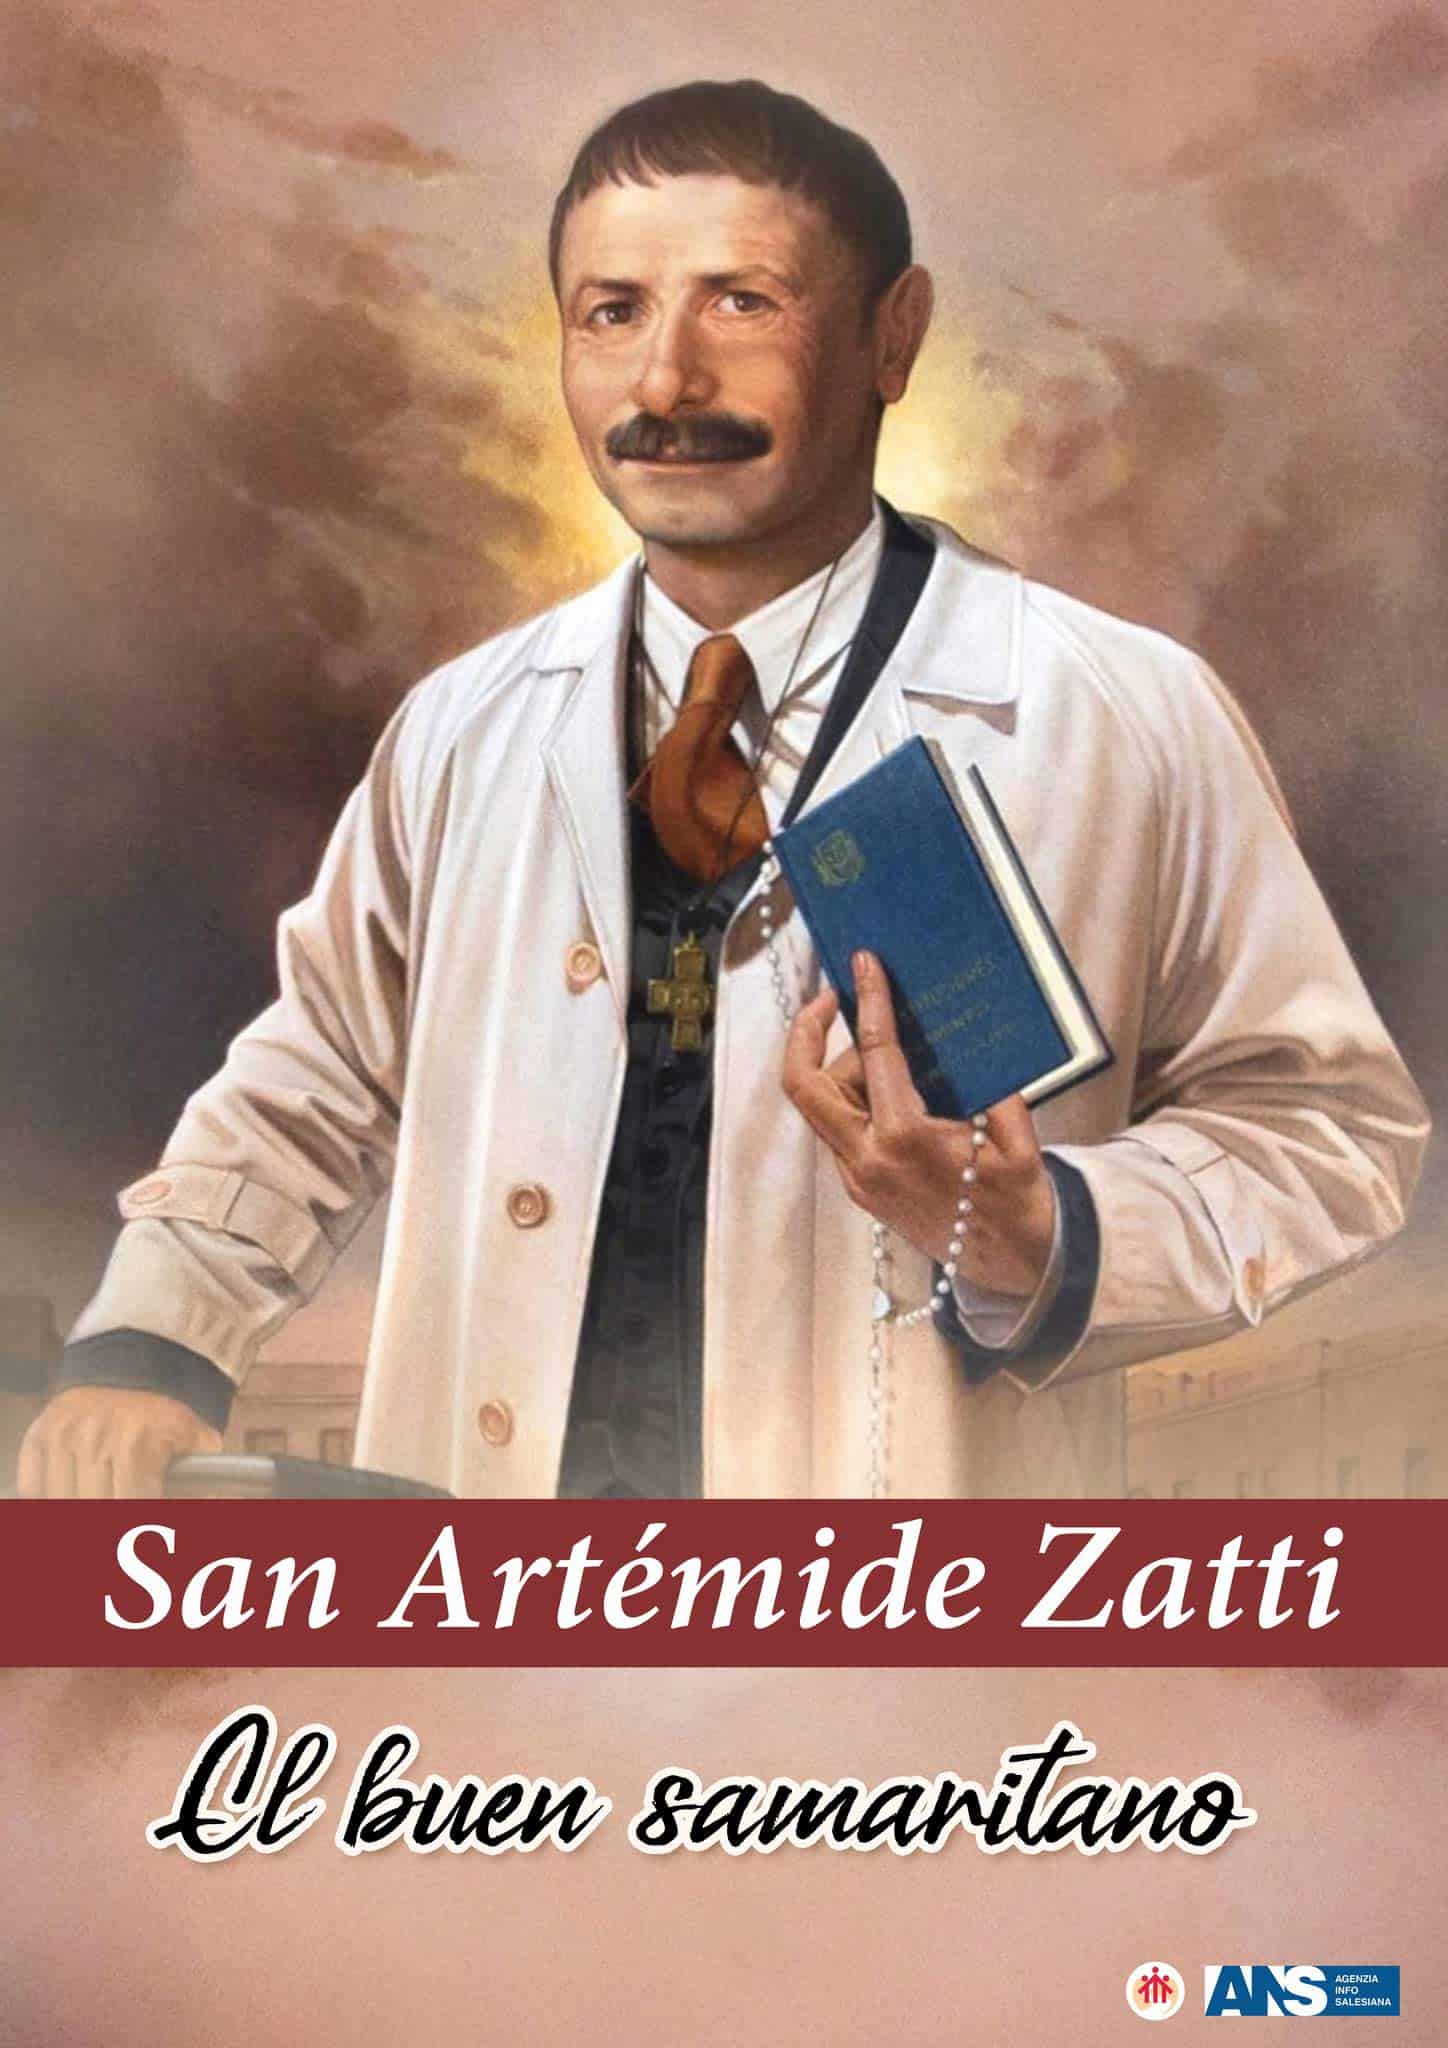 Artémides Zatti, otro santo de nuestras tierras